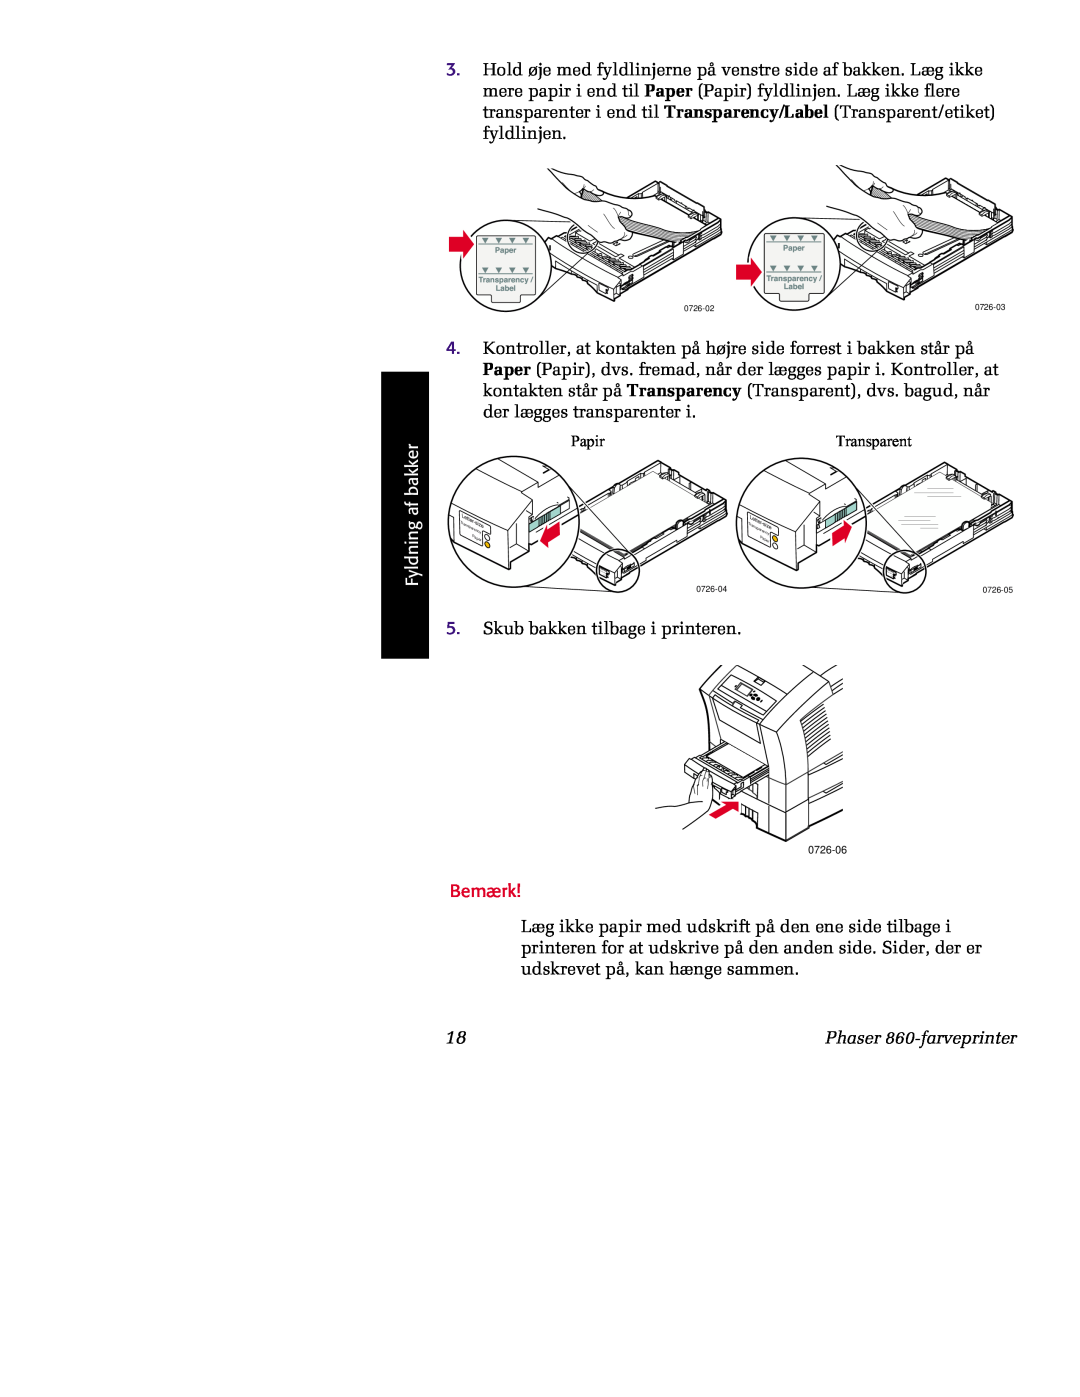 Tektronix manual Fyldning af bakker, Skub bakken tilbage i printeren, Bemærk, Phaser 860-farveprinter 